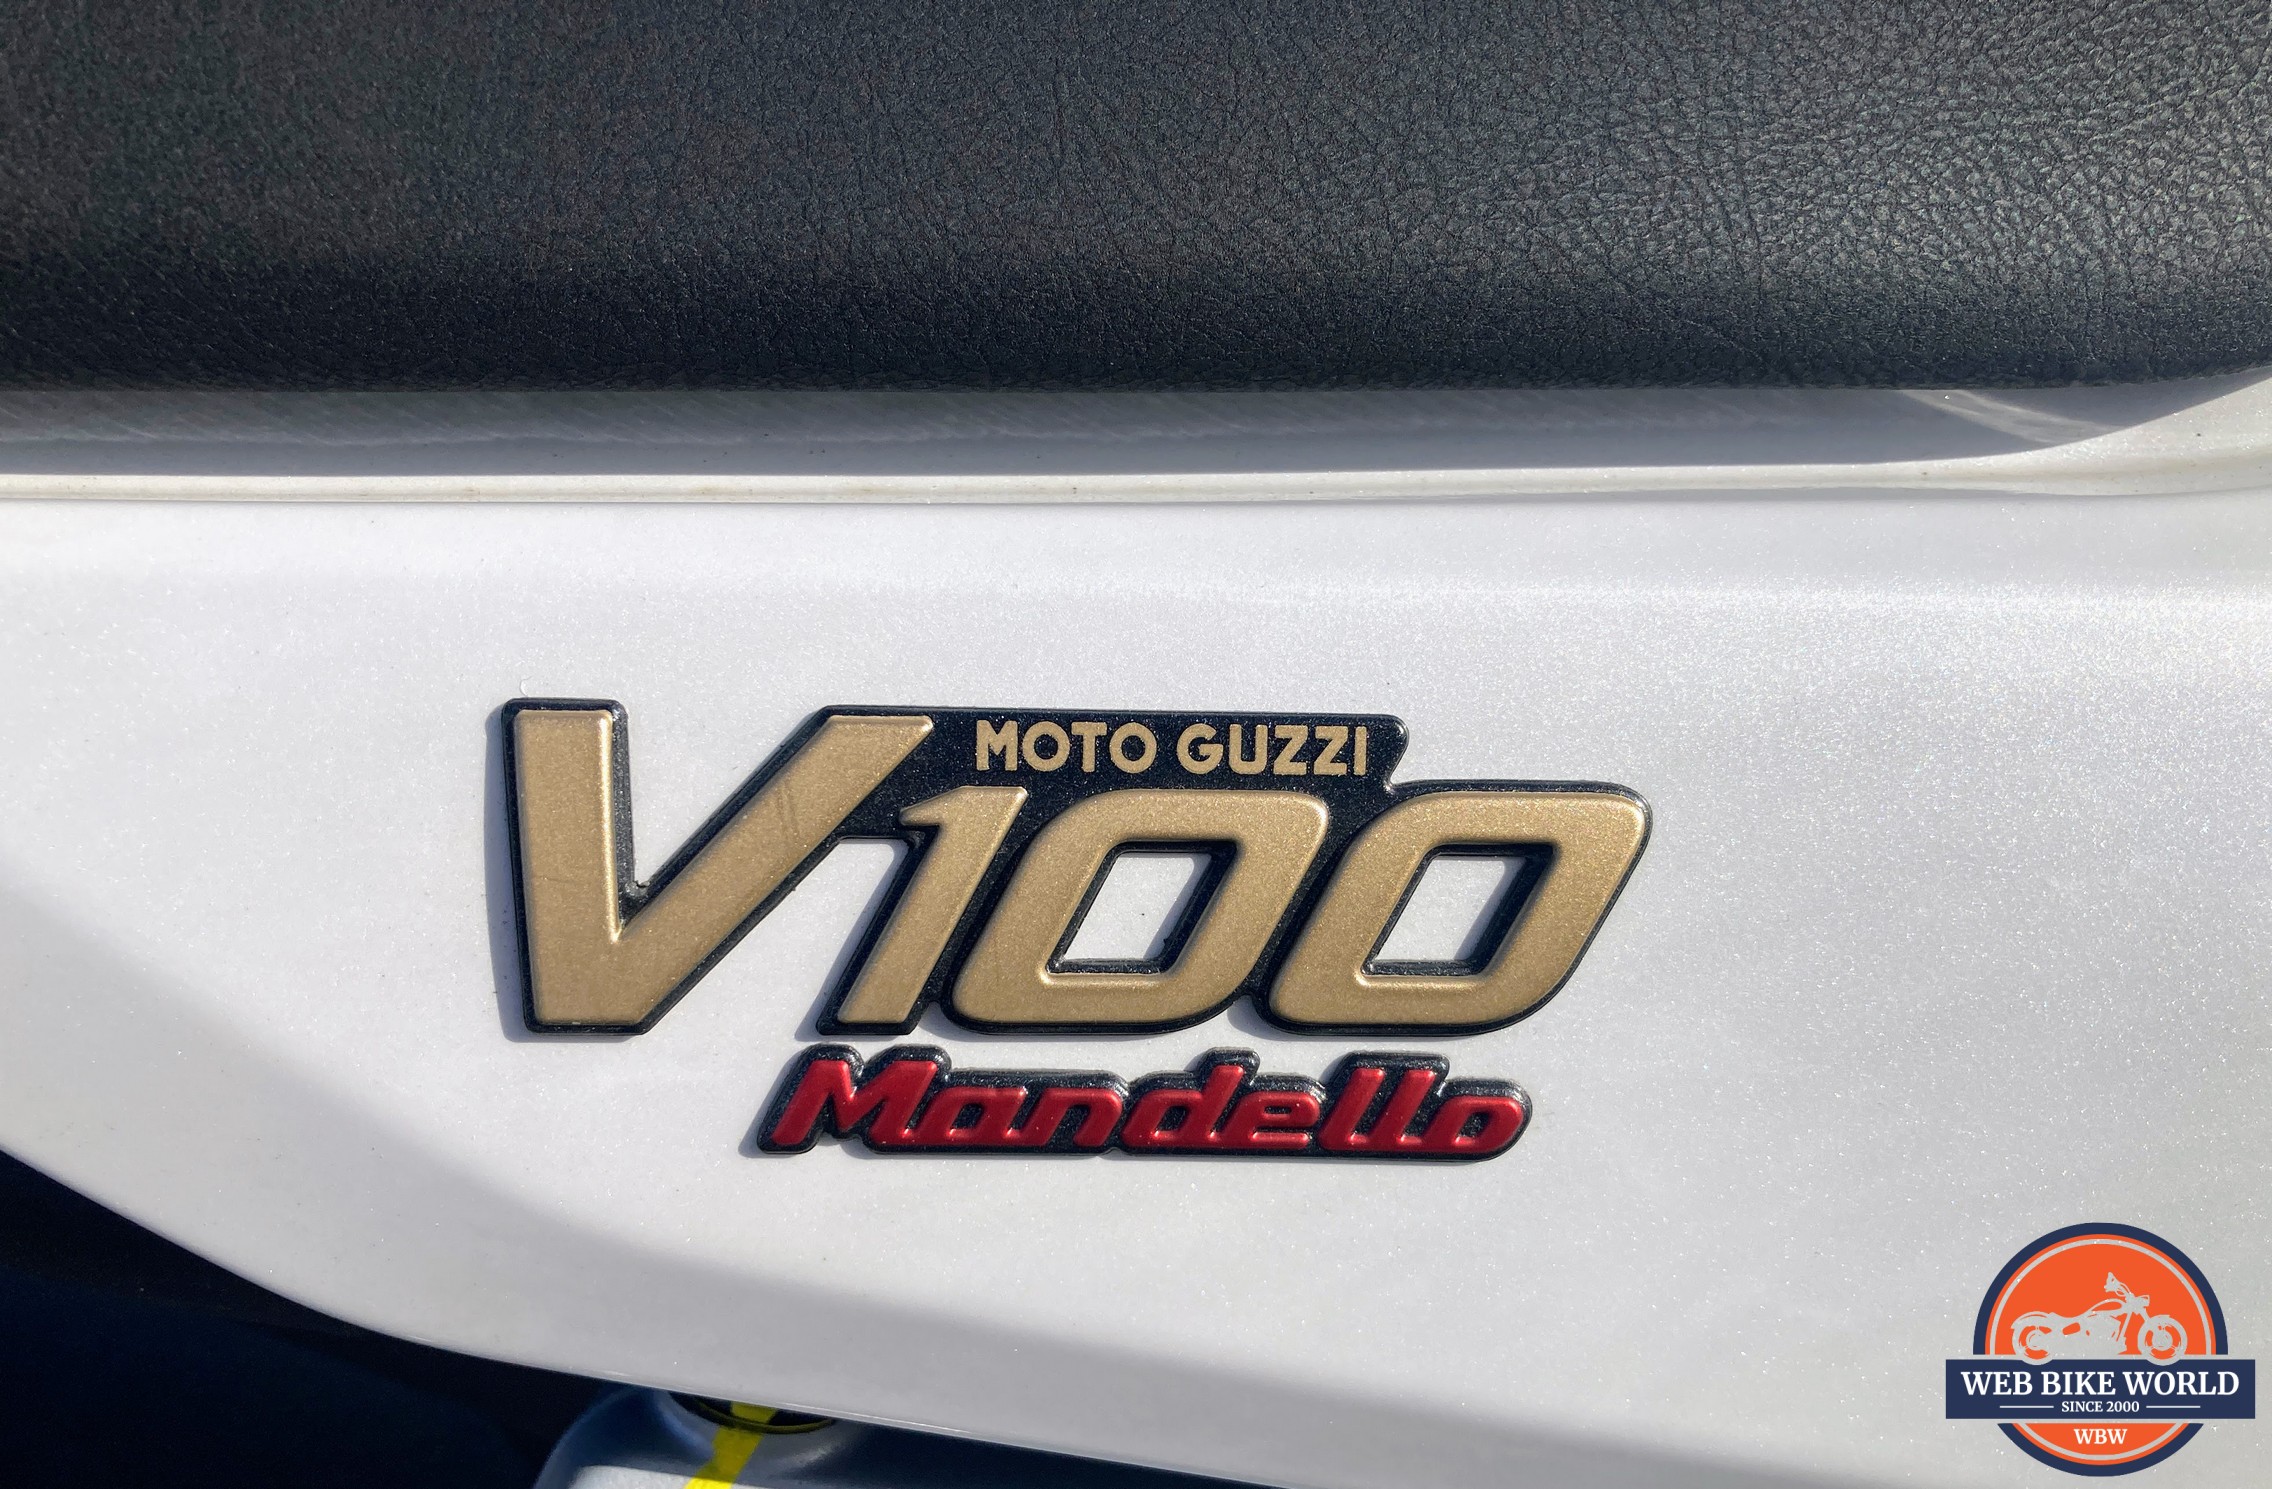 Closeup of the V100 Mandello logo